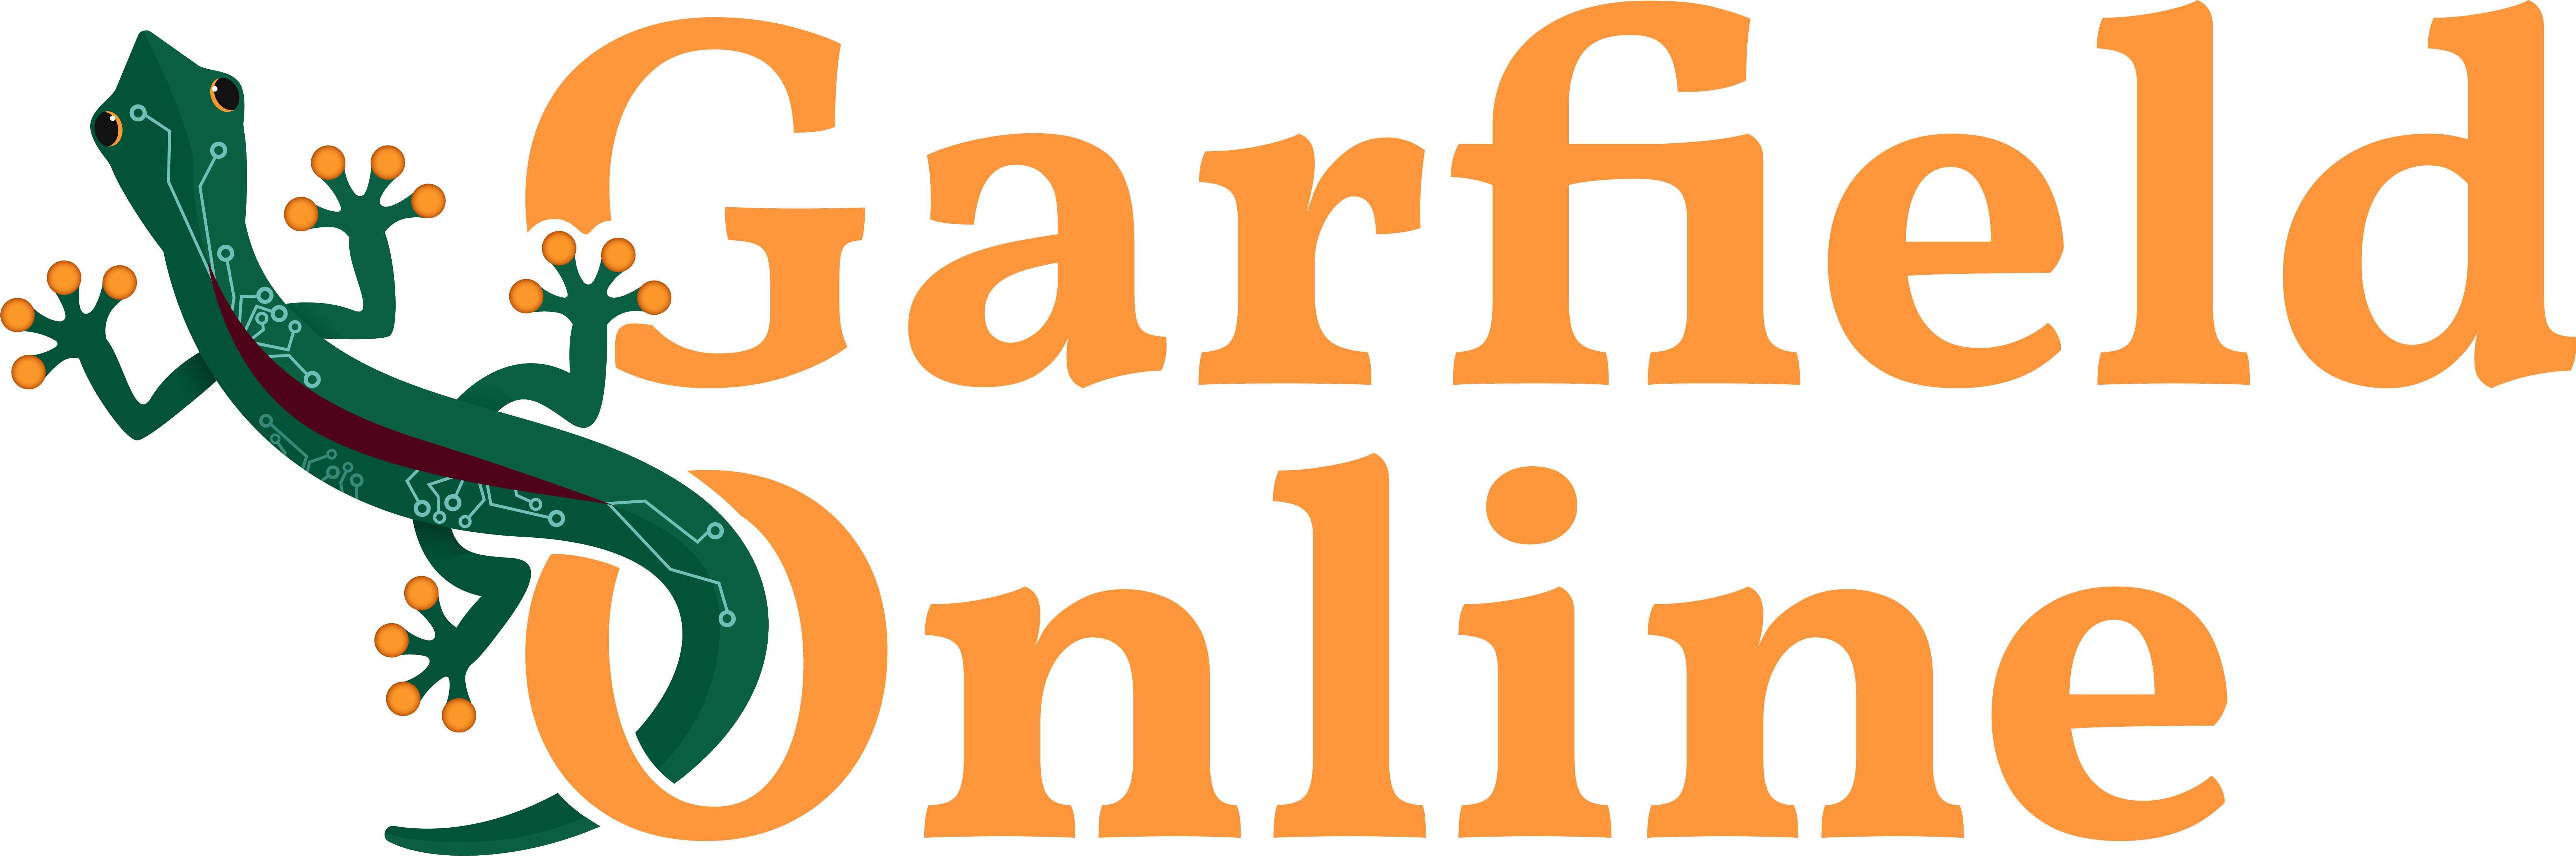 Garfield Online